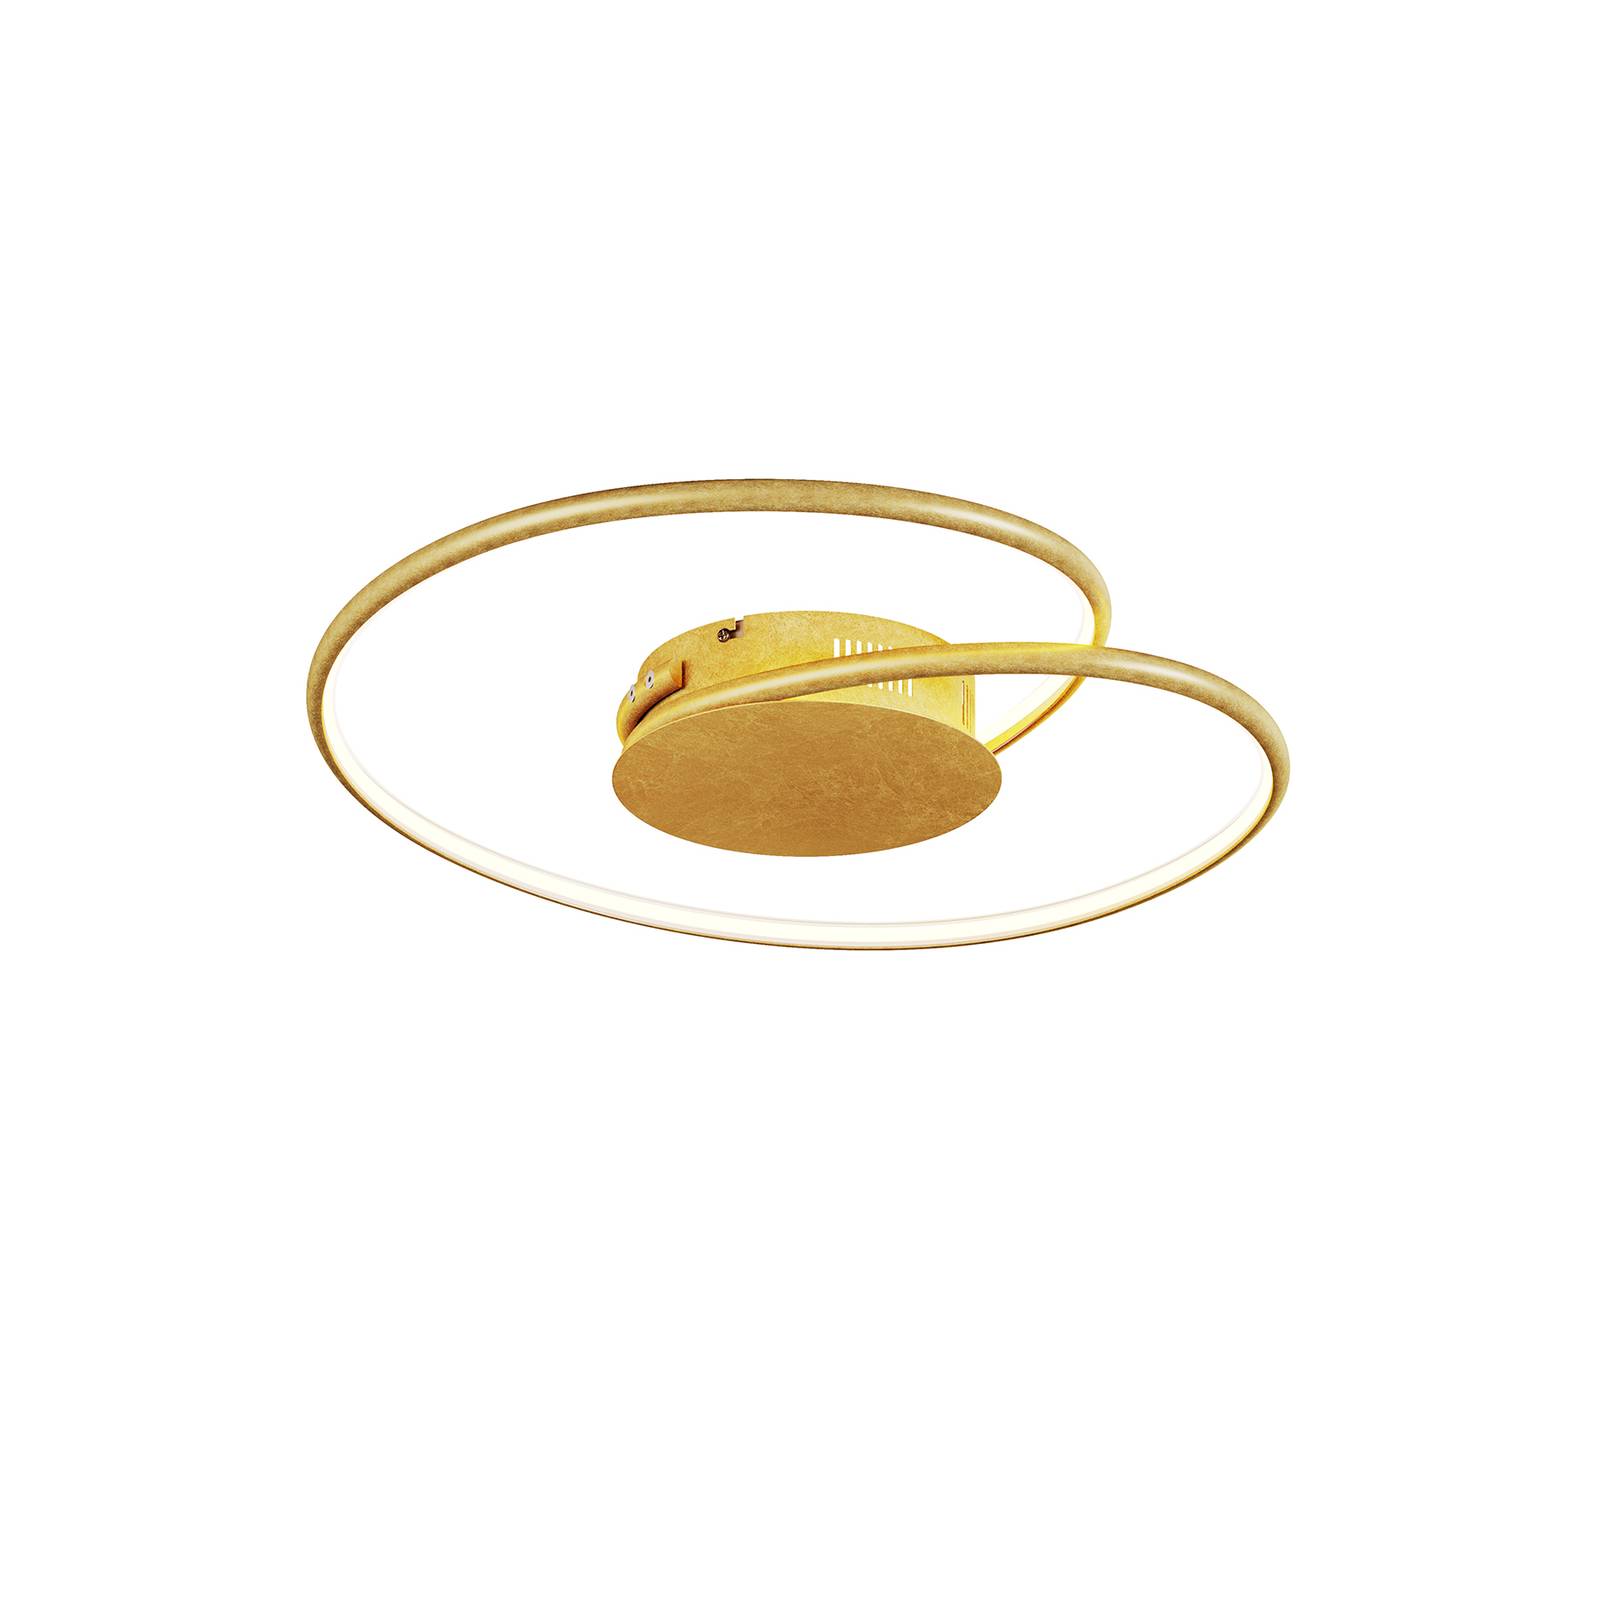 Lindby Joline LED-Deckenleuchte, gold, 45 cm